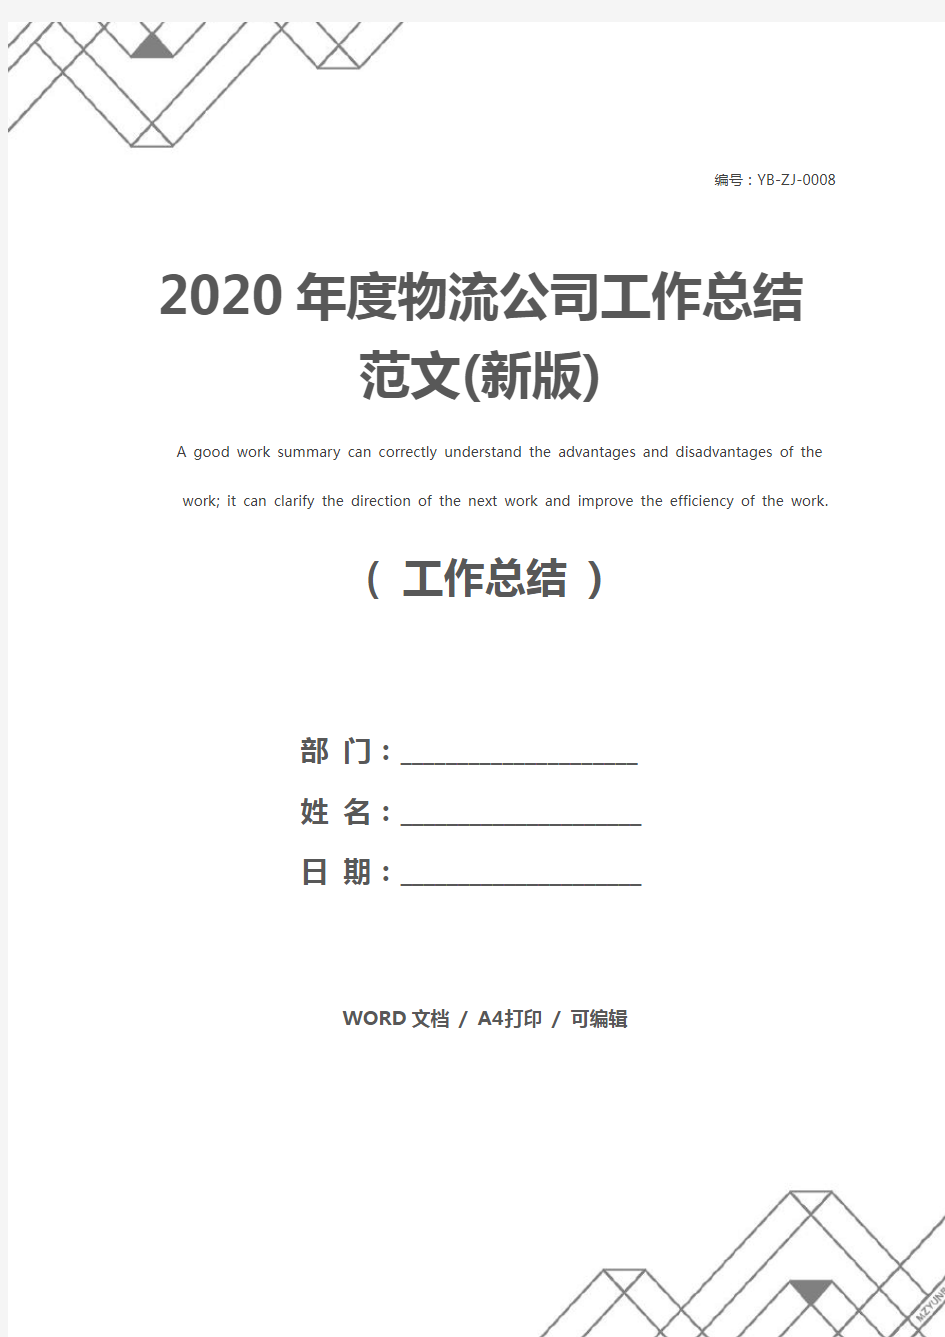 2020年度物流公司工作总结范文(新版)